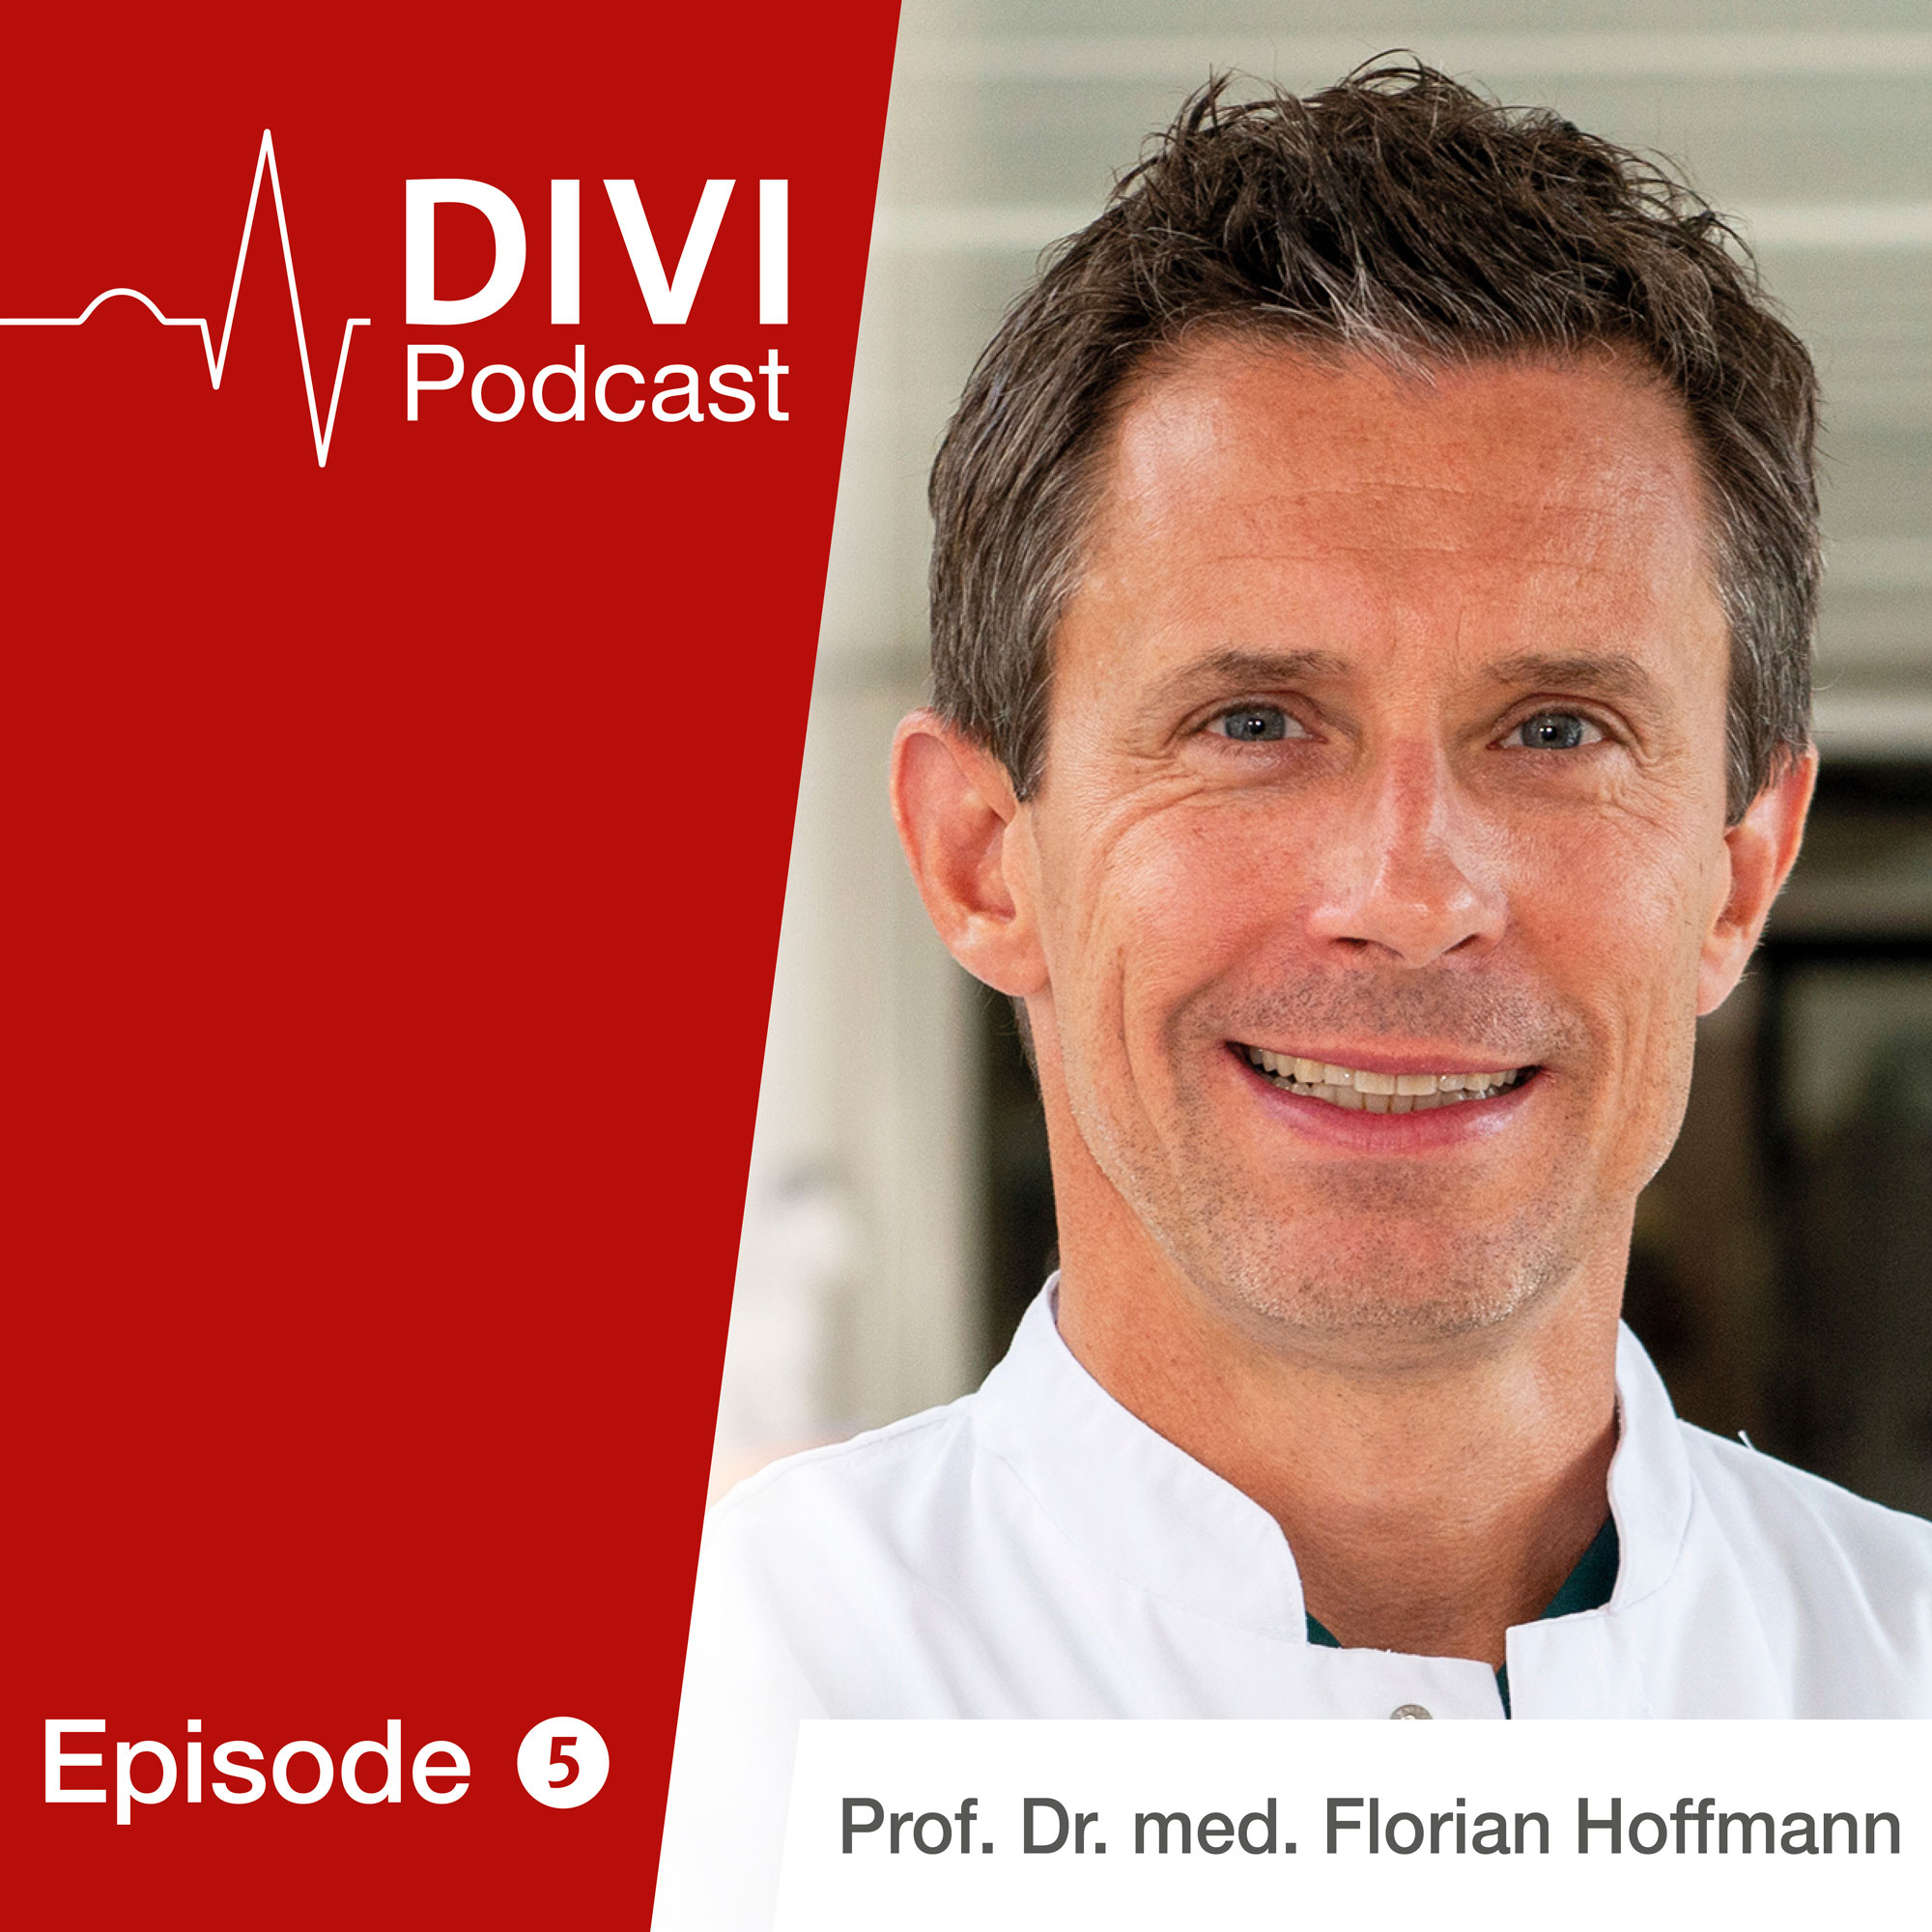 Prof. Dr. Florian Hoffmann